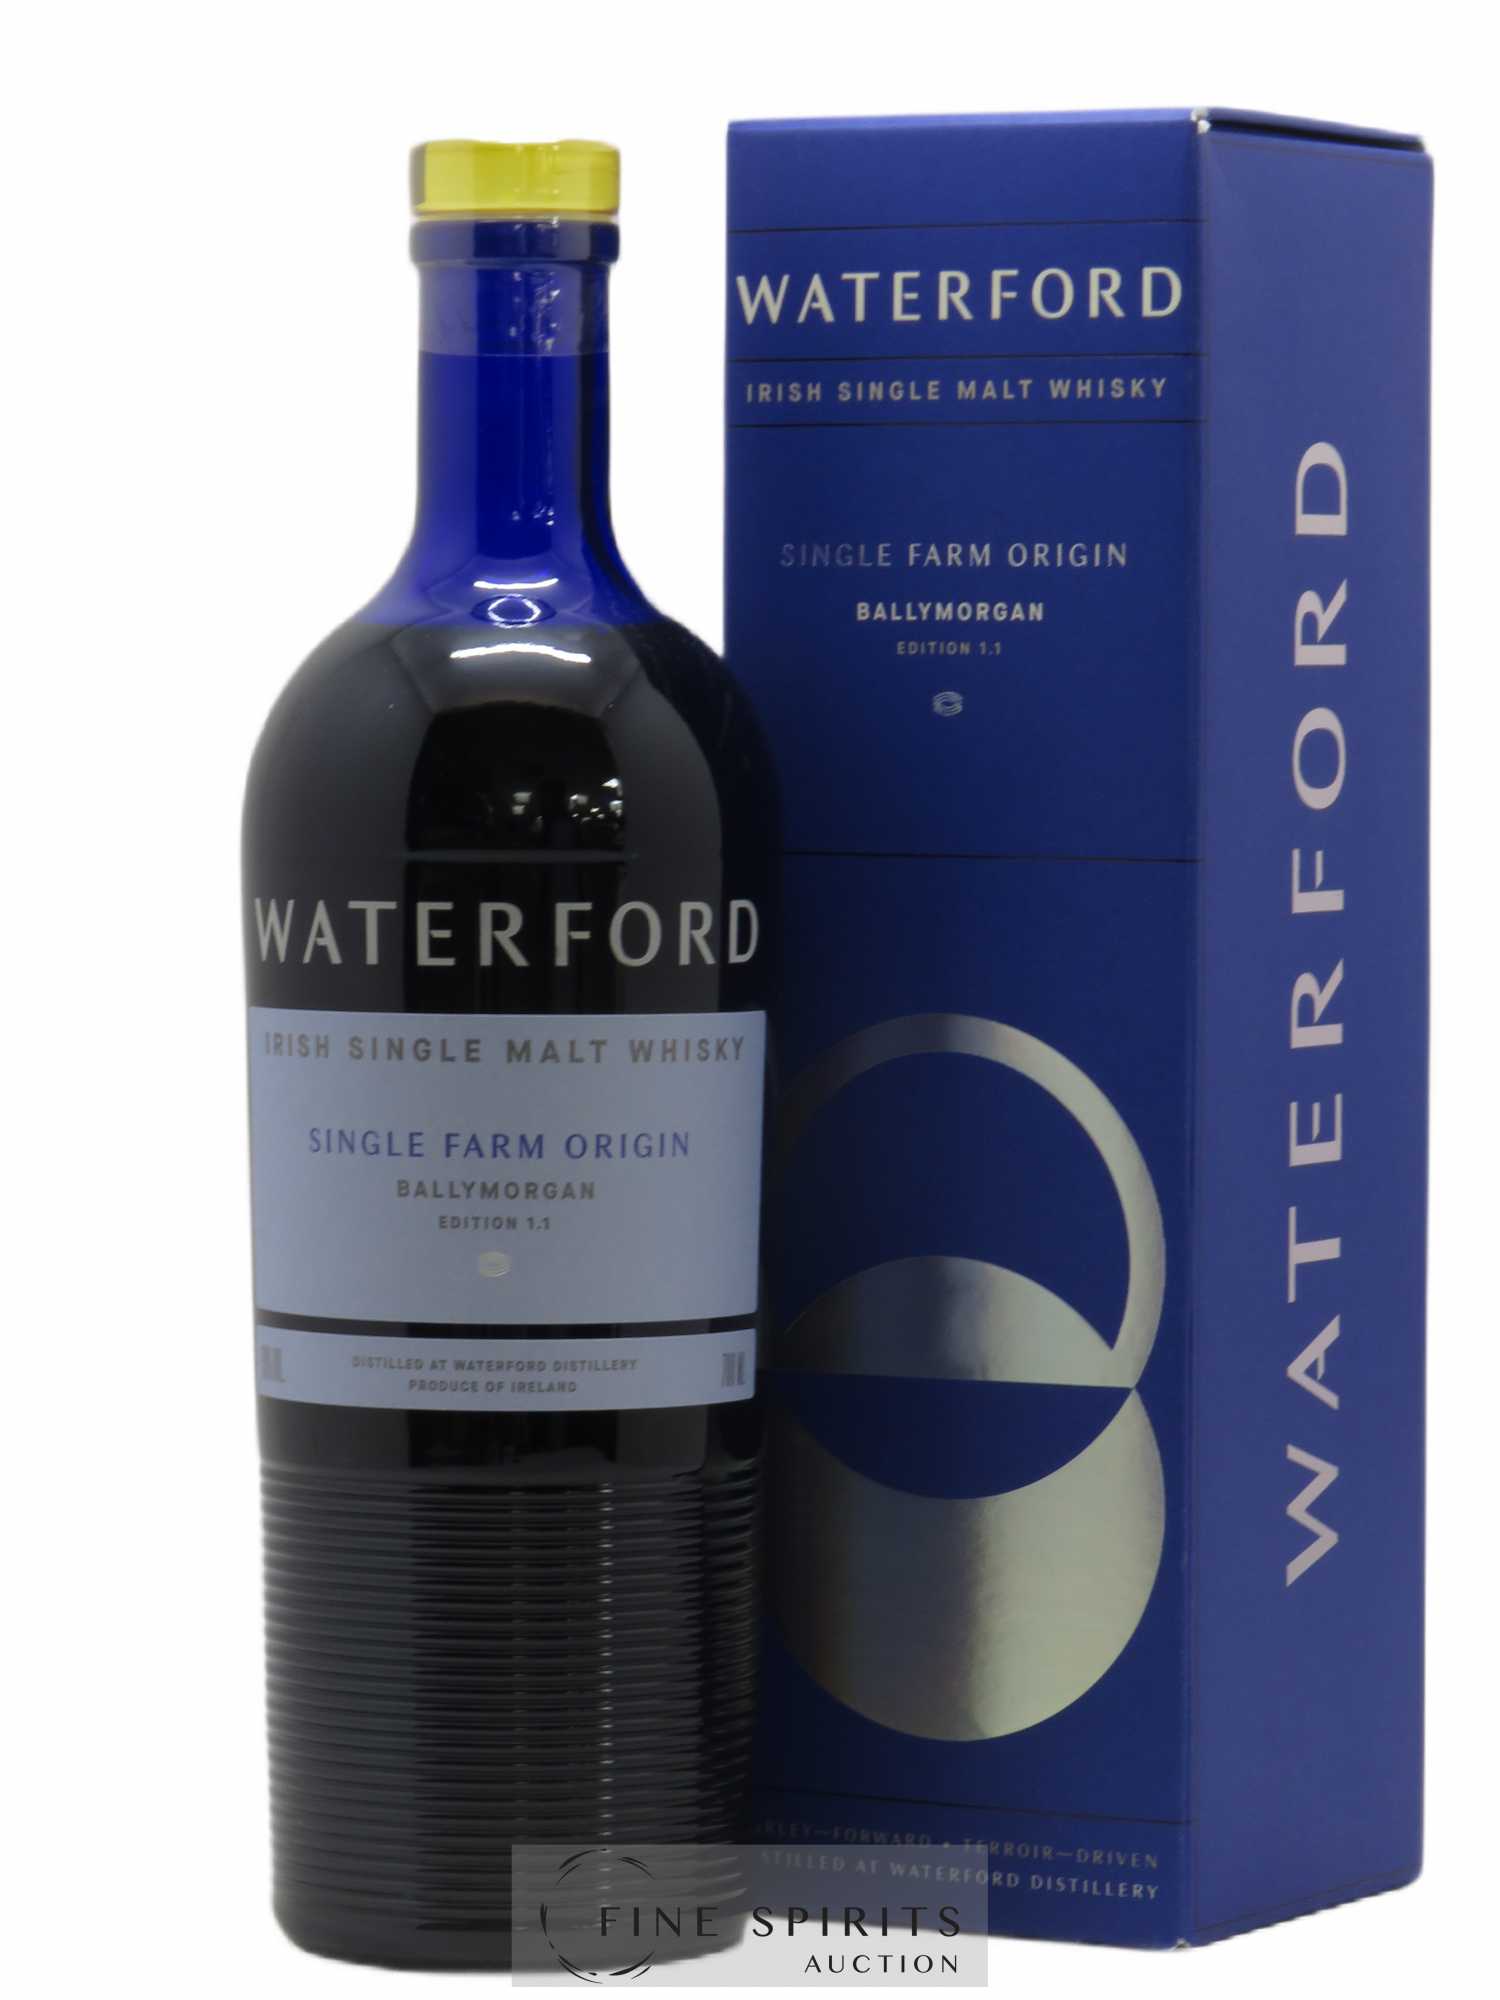 Waterford Of. Ballymorgan Edition 1.1 Single Farm Origin 